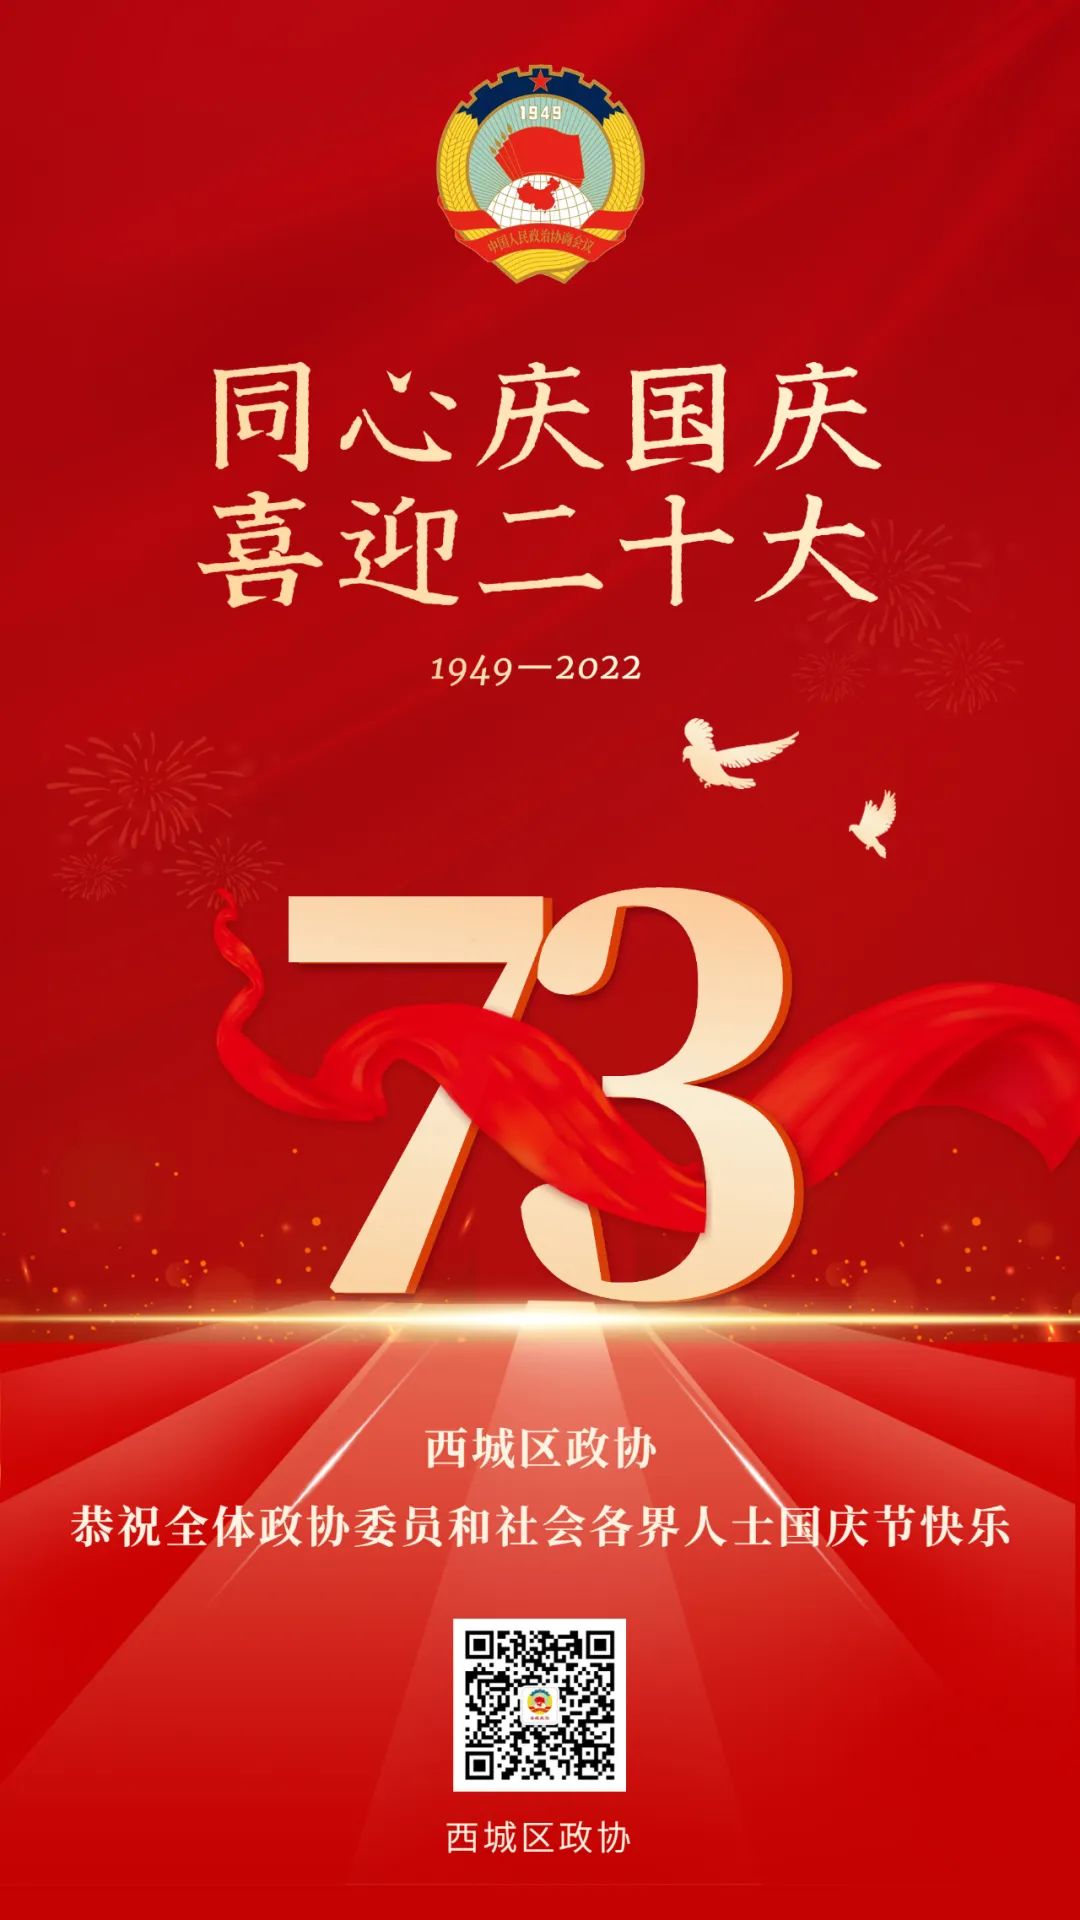 北京西城区政协恭祝全体政协委员和社会各界人士国庆节快乐